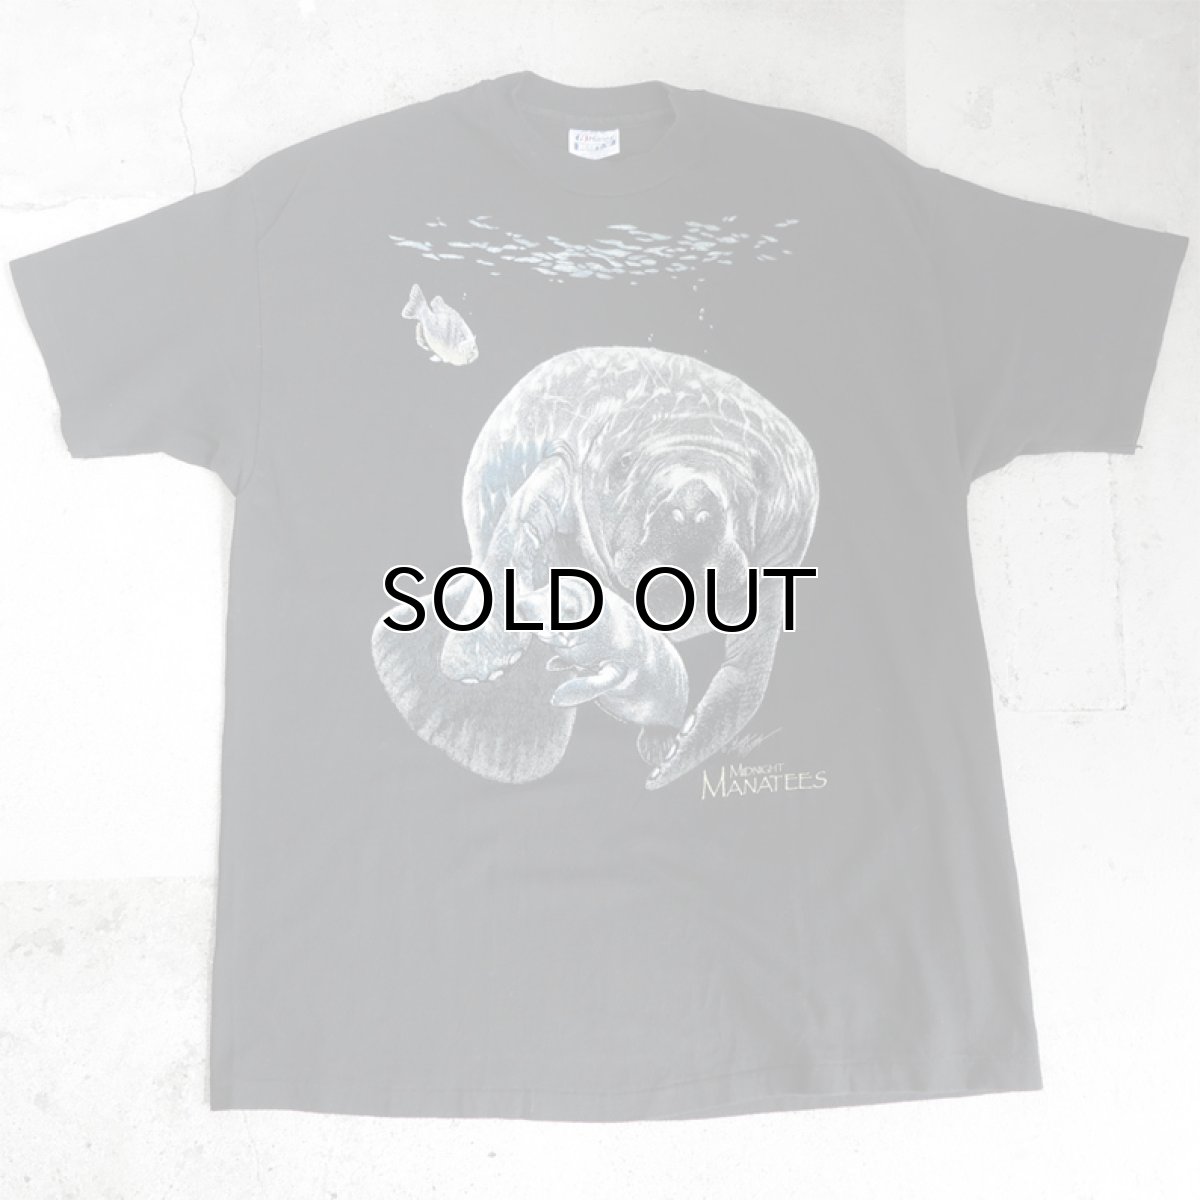 画像1: 1990's "MANATEES" Animal Big Print T-Shirt　BLACK　size XL (1)